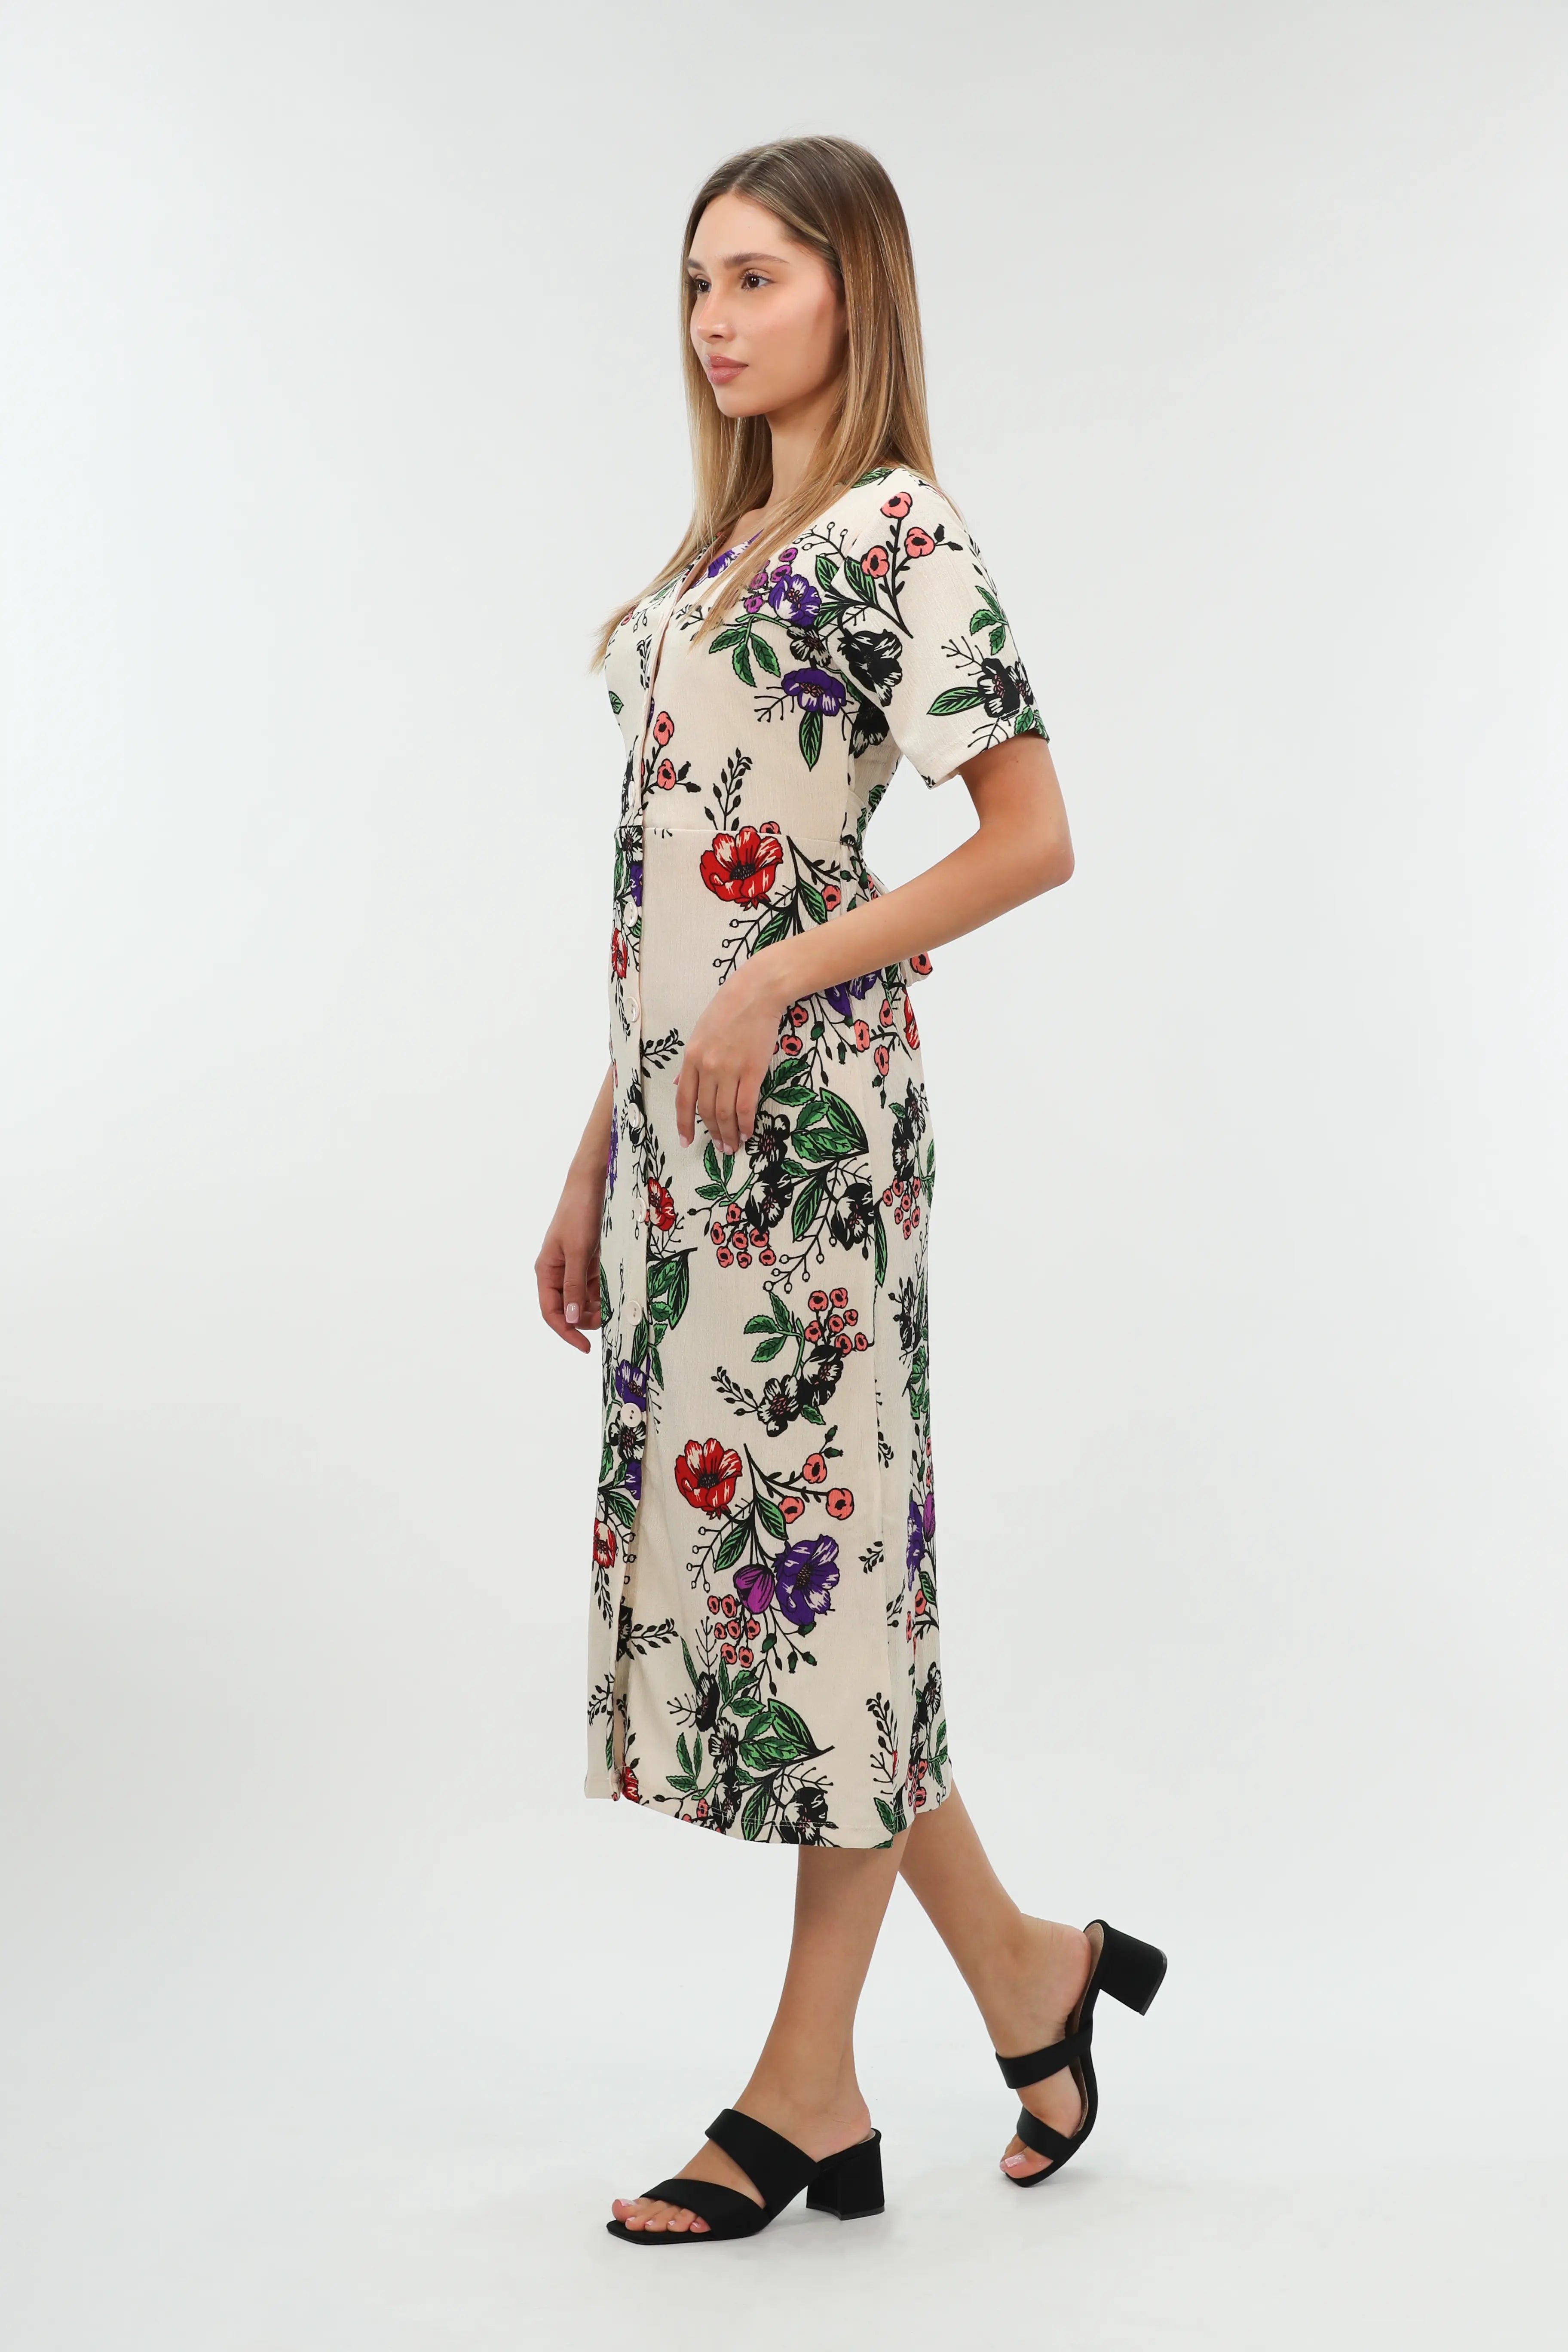 Beige Dress Short Sleeved With Flower Design